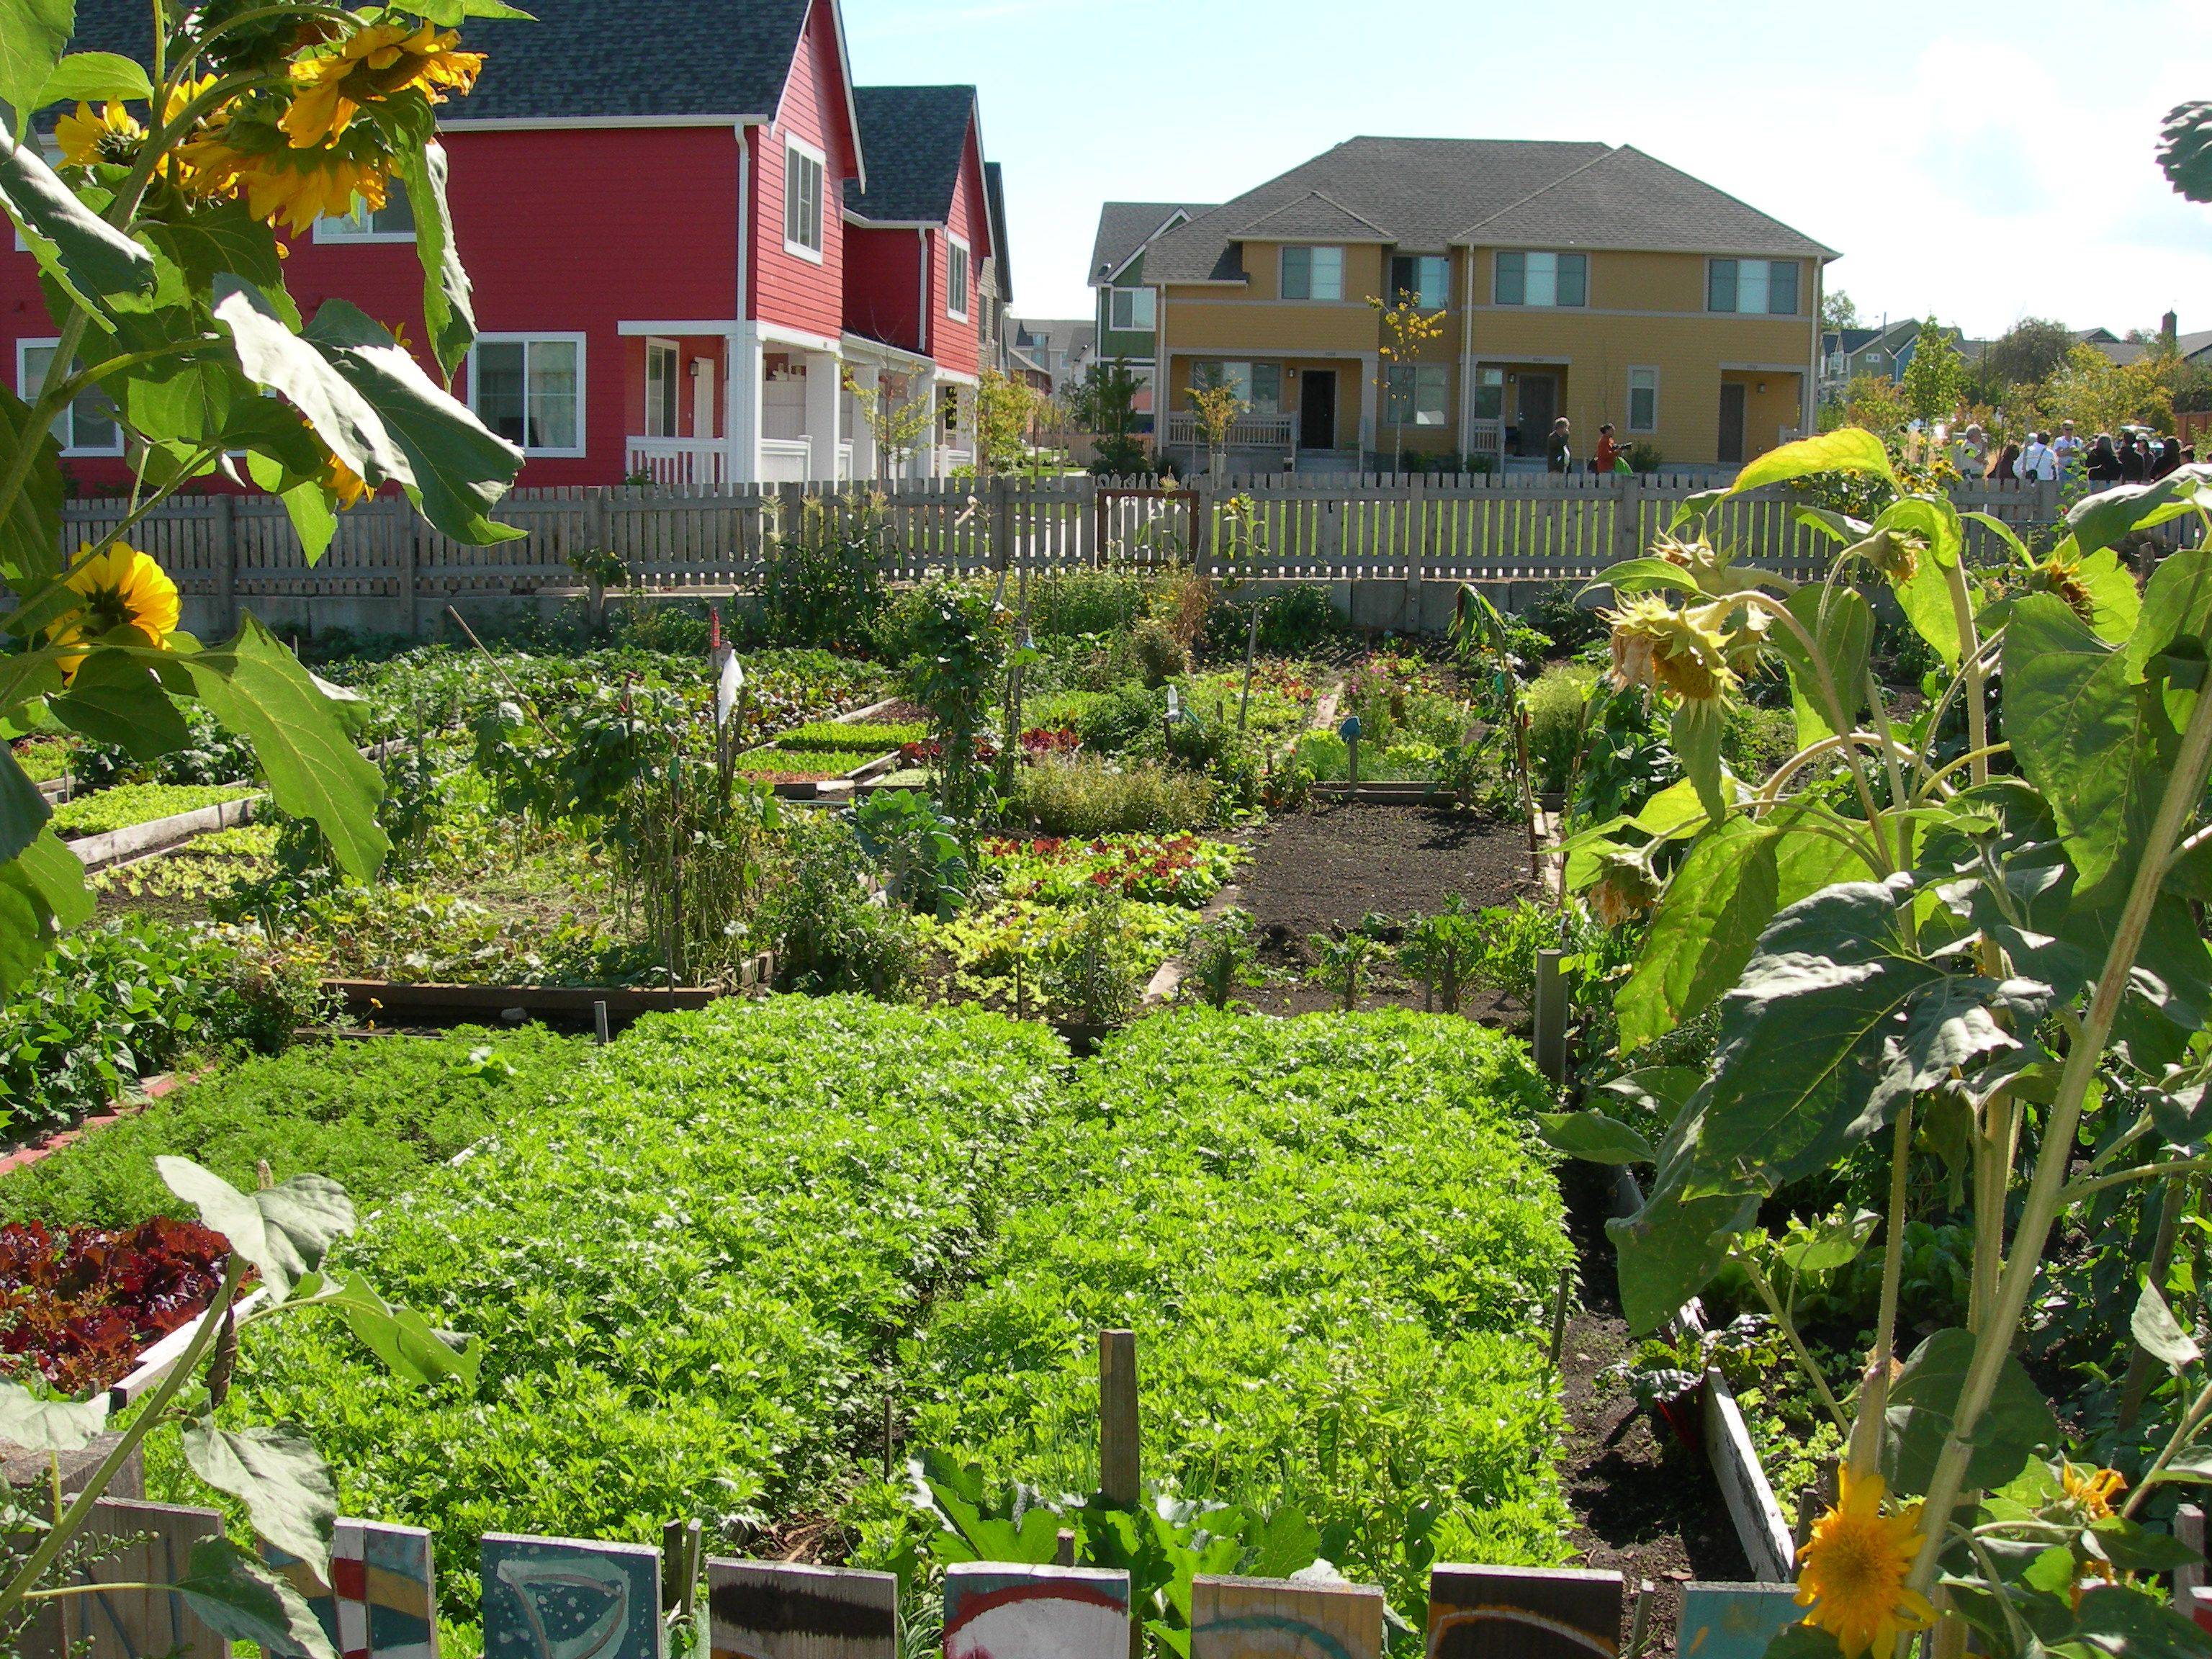 Garden Plot Ideas